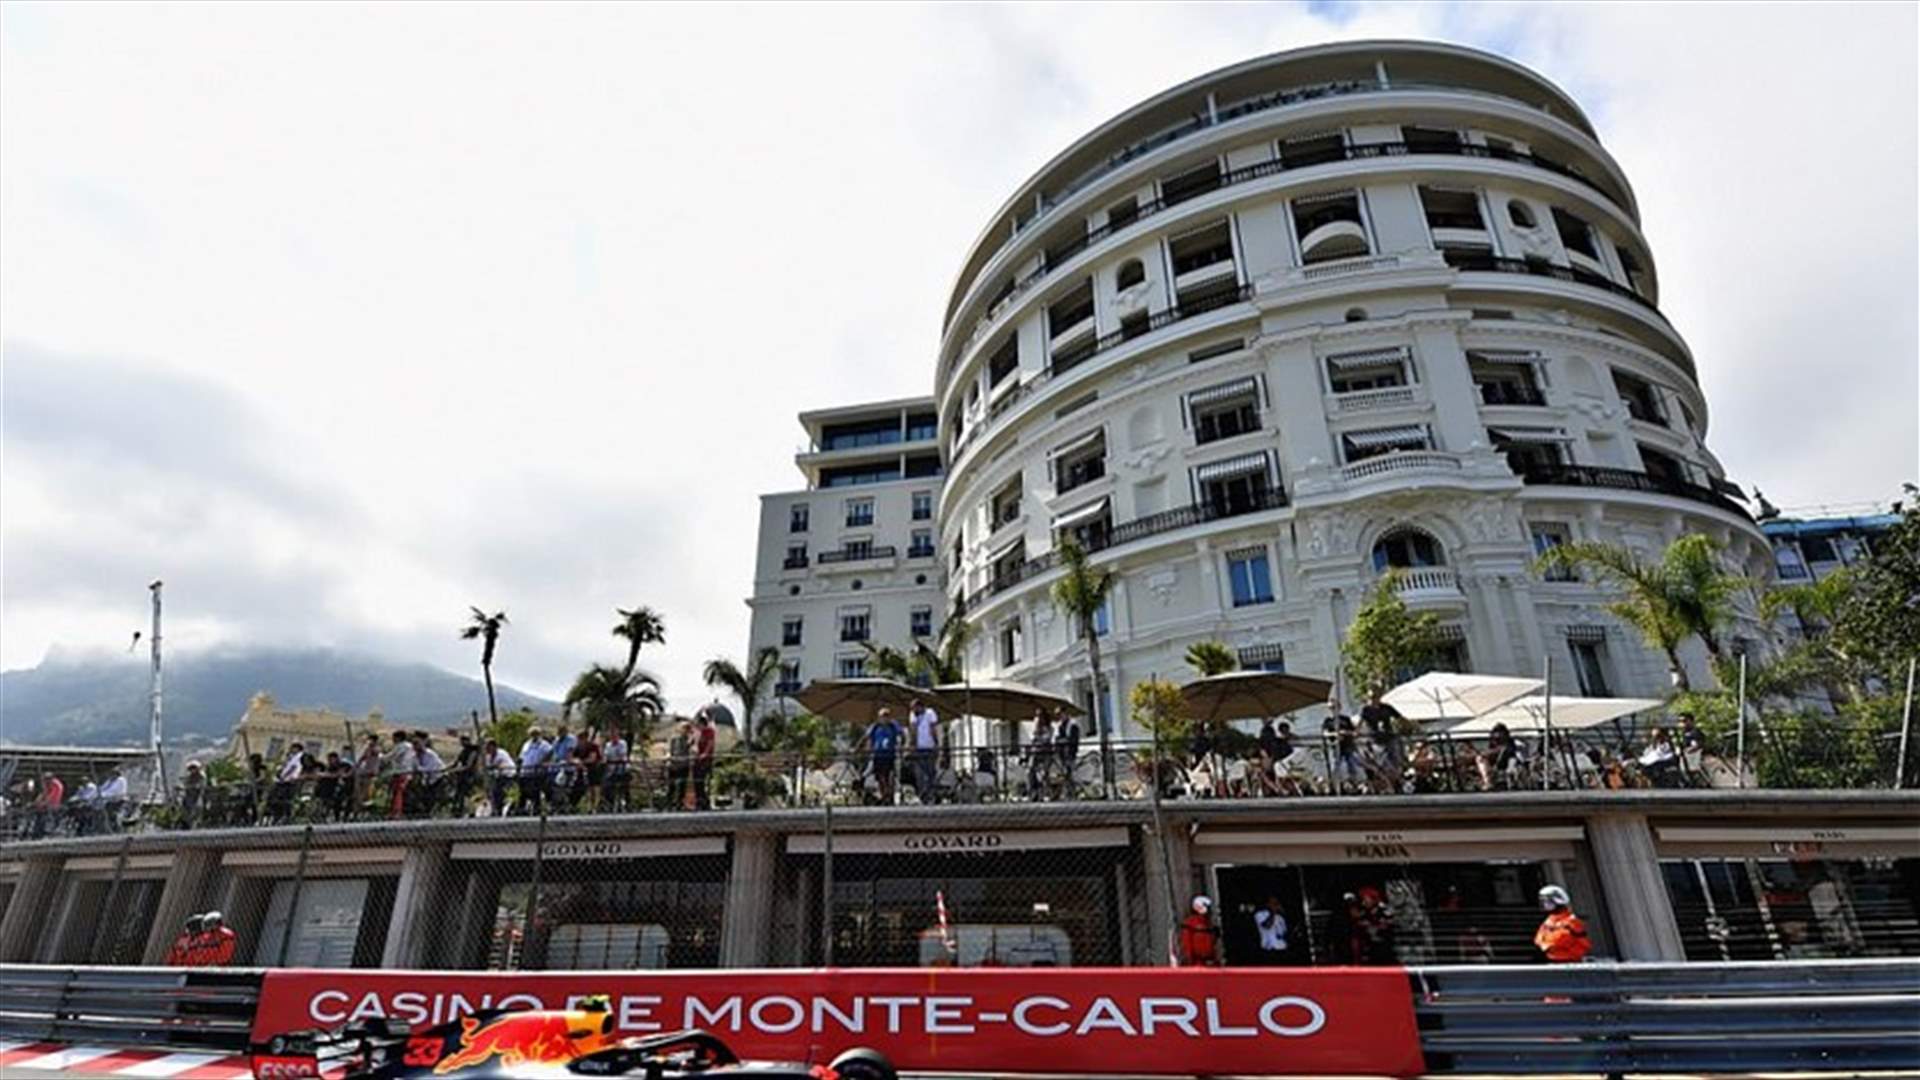 بالصور - امرأة تستجم في موناكو غير مبالية لسباق الفورمولا وان